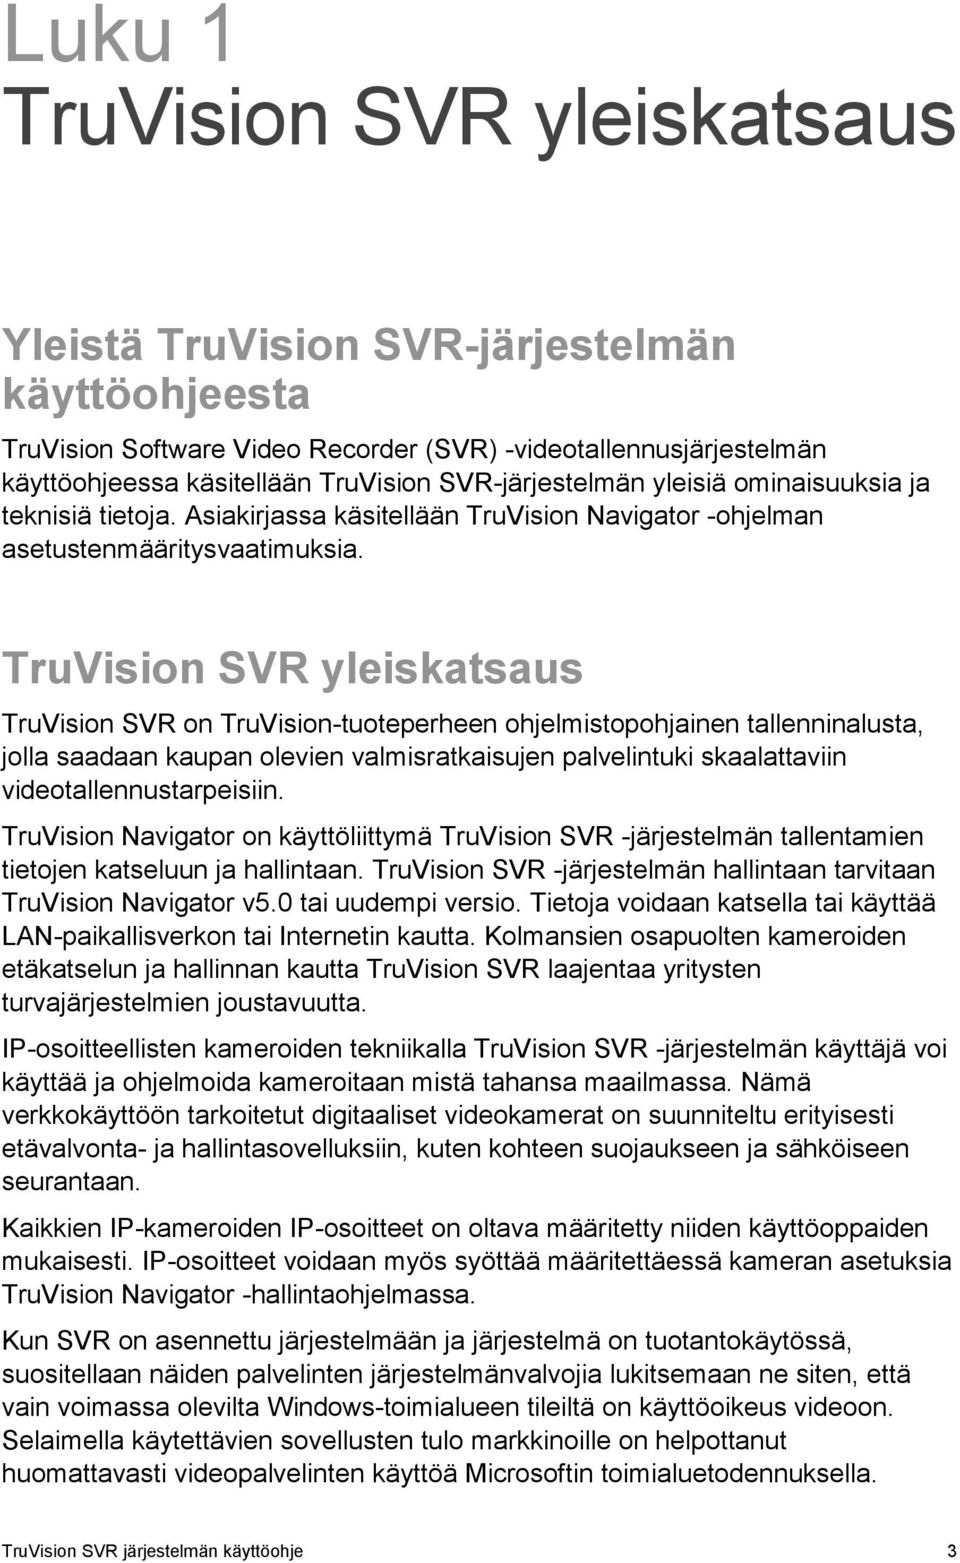 TruVision SVR yleiskatsaus TruVision SVR on TruVision-tuoteperheen ohjelmistopohjainen tallenninalusta, jolla saadaan kaupan olevien valmisratkaisujen palvelintuki skaalattaviin